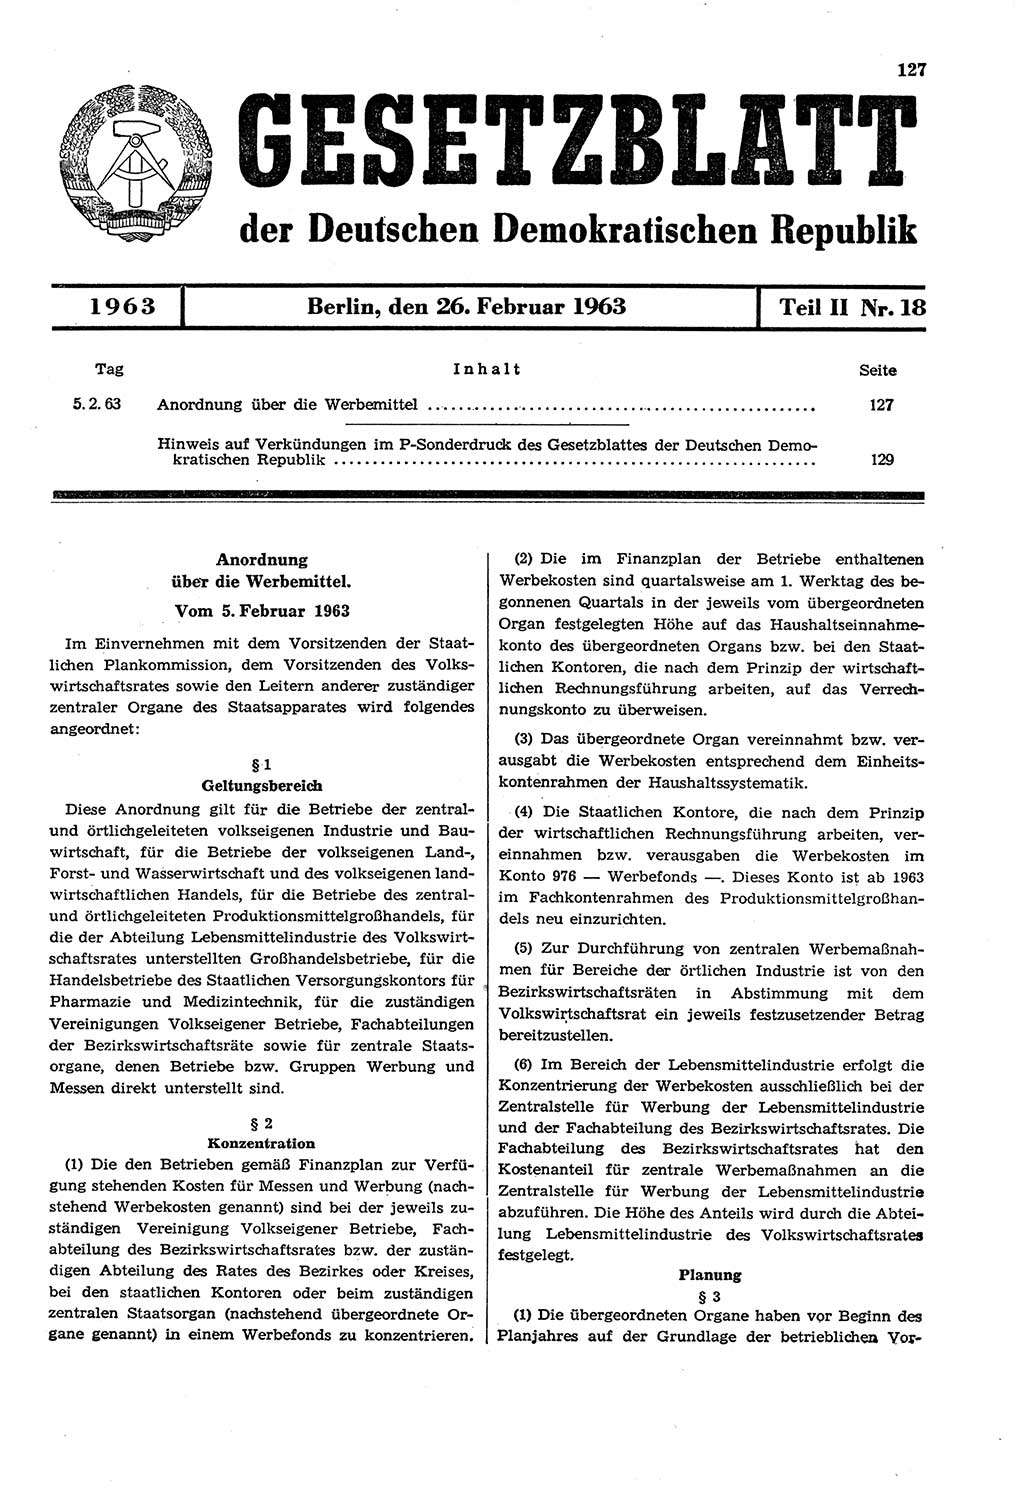 Gesetzblatt (GBl.) der Deutschen Demokratischen Republik (DDR) Teil ⅠⅠ 1963, Seite 127 (GBl. DDR ⅠⅠ 1963, S. 127)